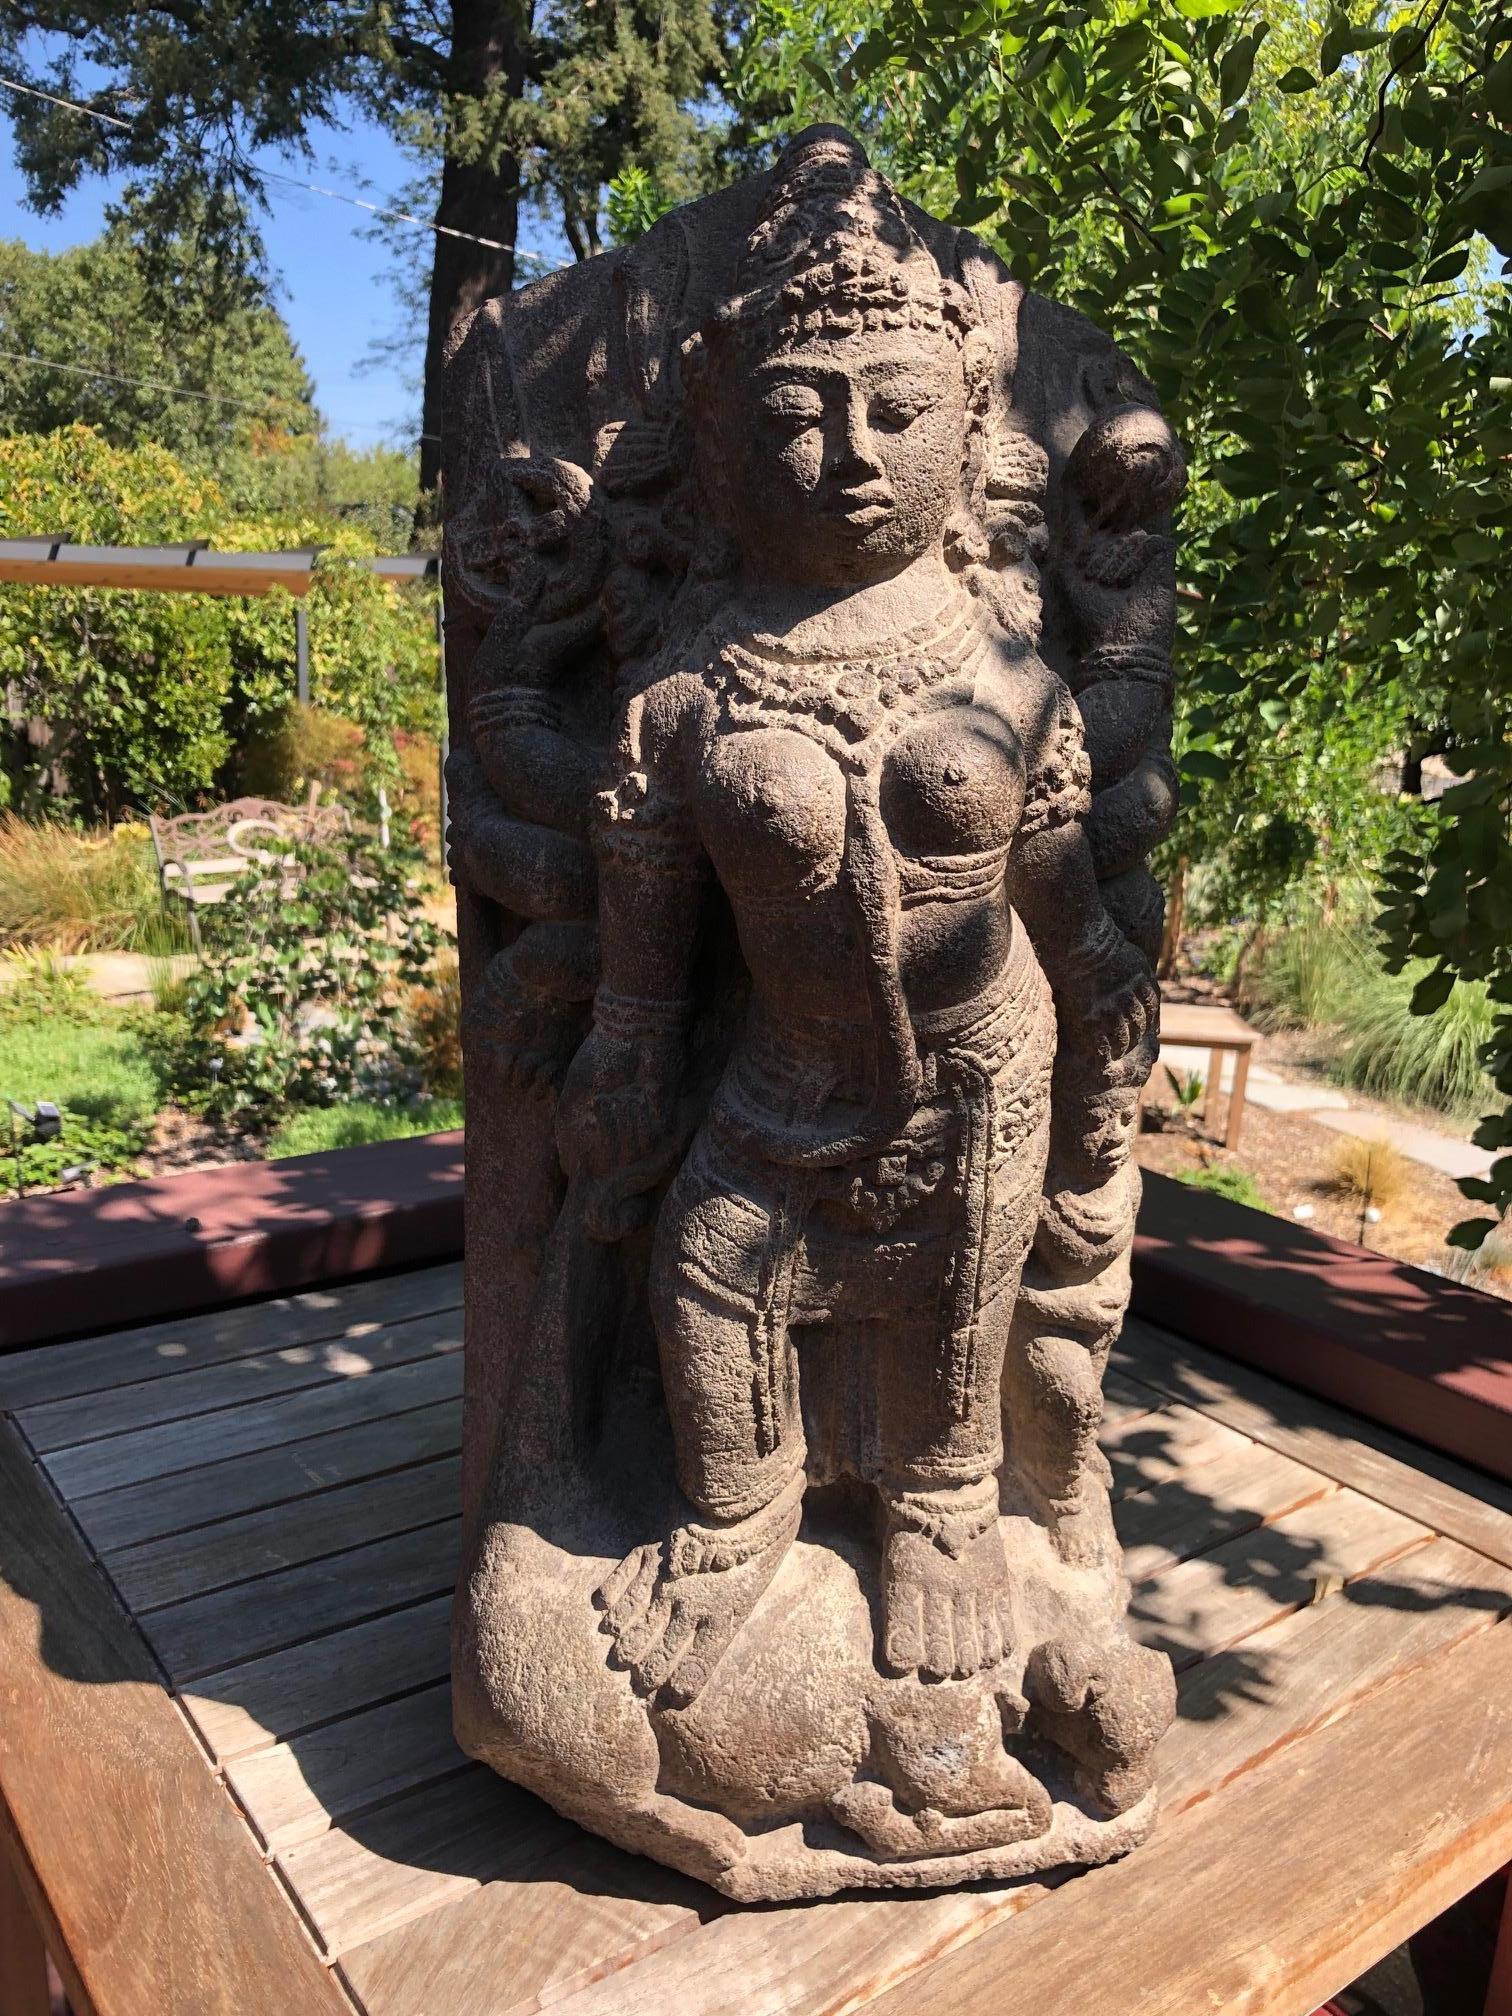 Meisterwerk 9. Jahrhundert Stein Durga aus Java. Diese Skulptur ist eine der schönsten, die ich in über 30 Jahren anbieten durfte. Die tiefe spirituelle Präsenz ist im Gesicht und in der allgemeinen Haltung der Durga-Figur spürbar. Die Schnitzerei